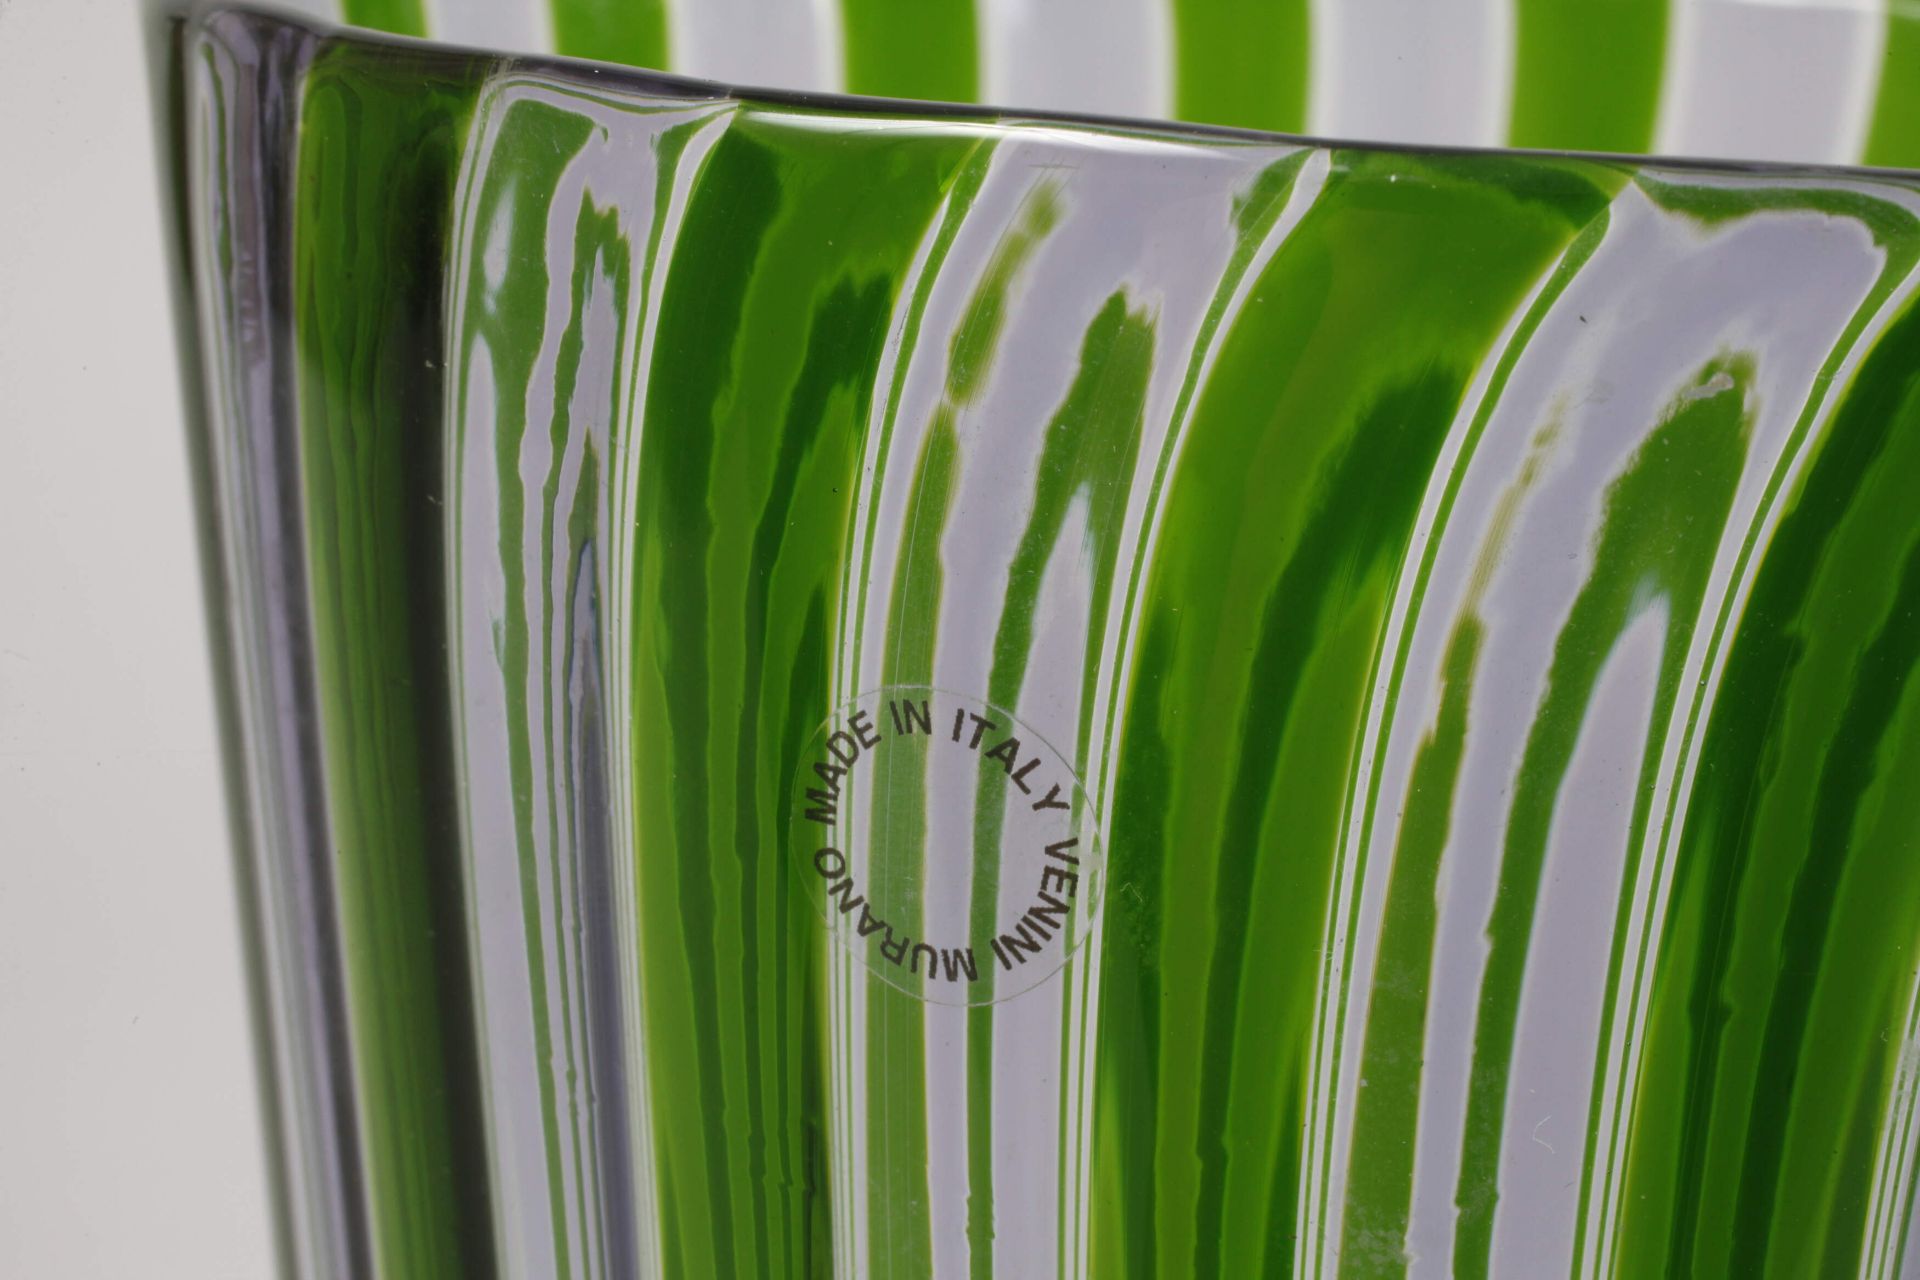 Venini Murano goblet vase - Image 3 of 6